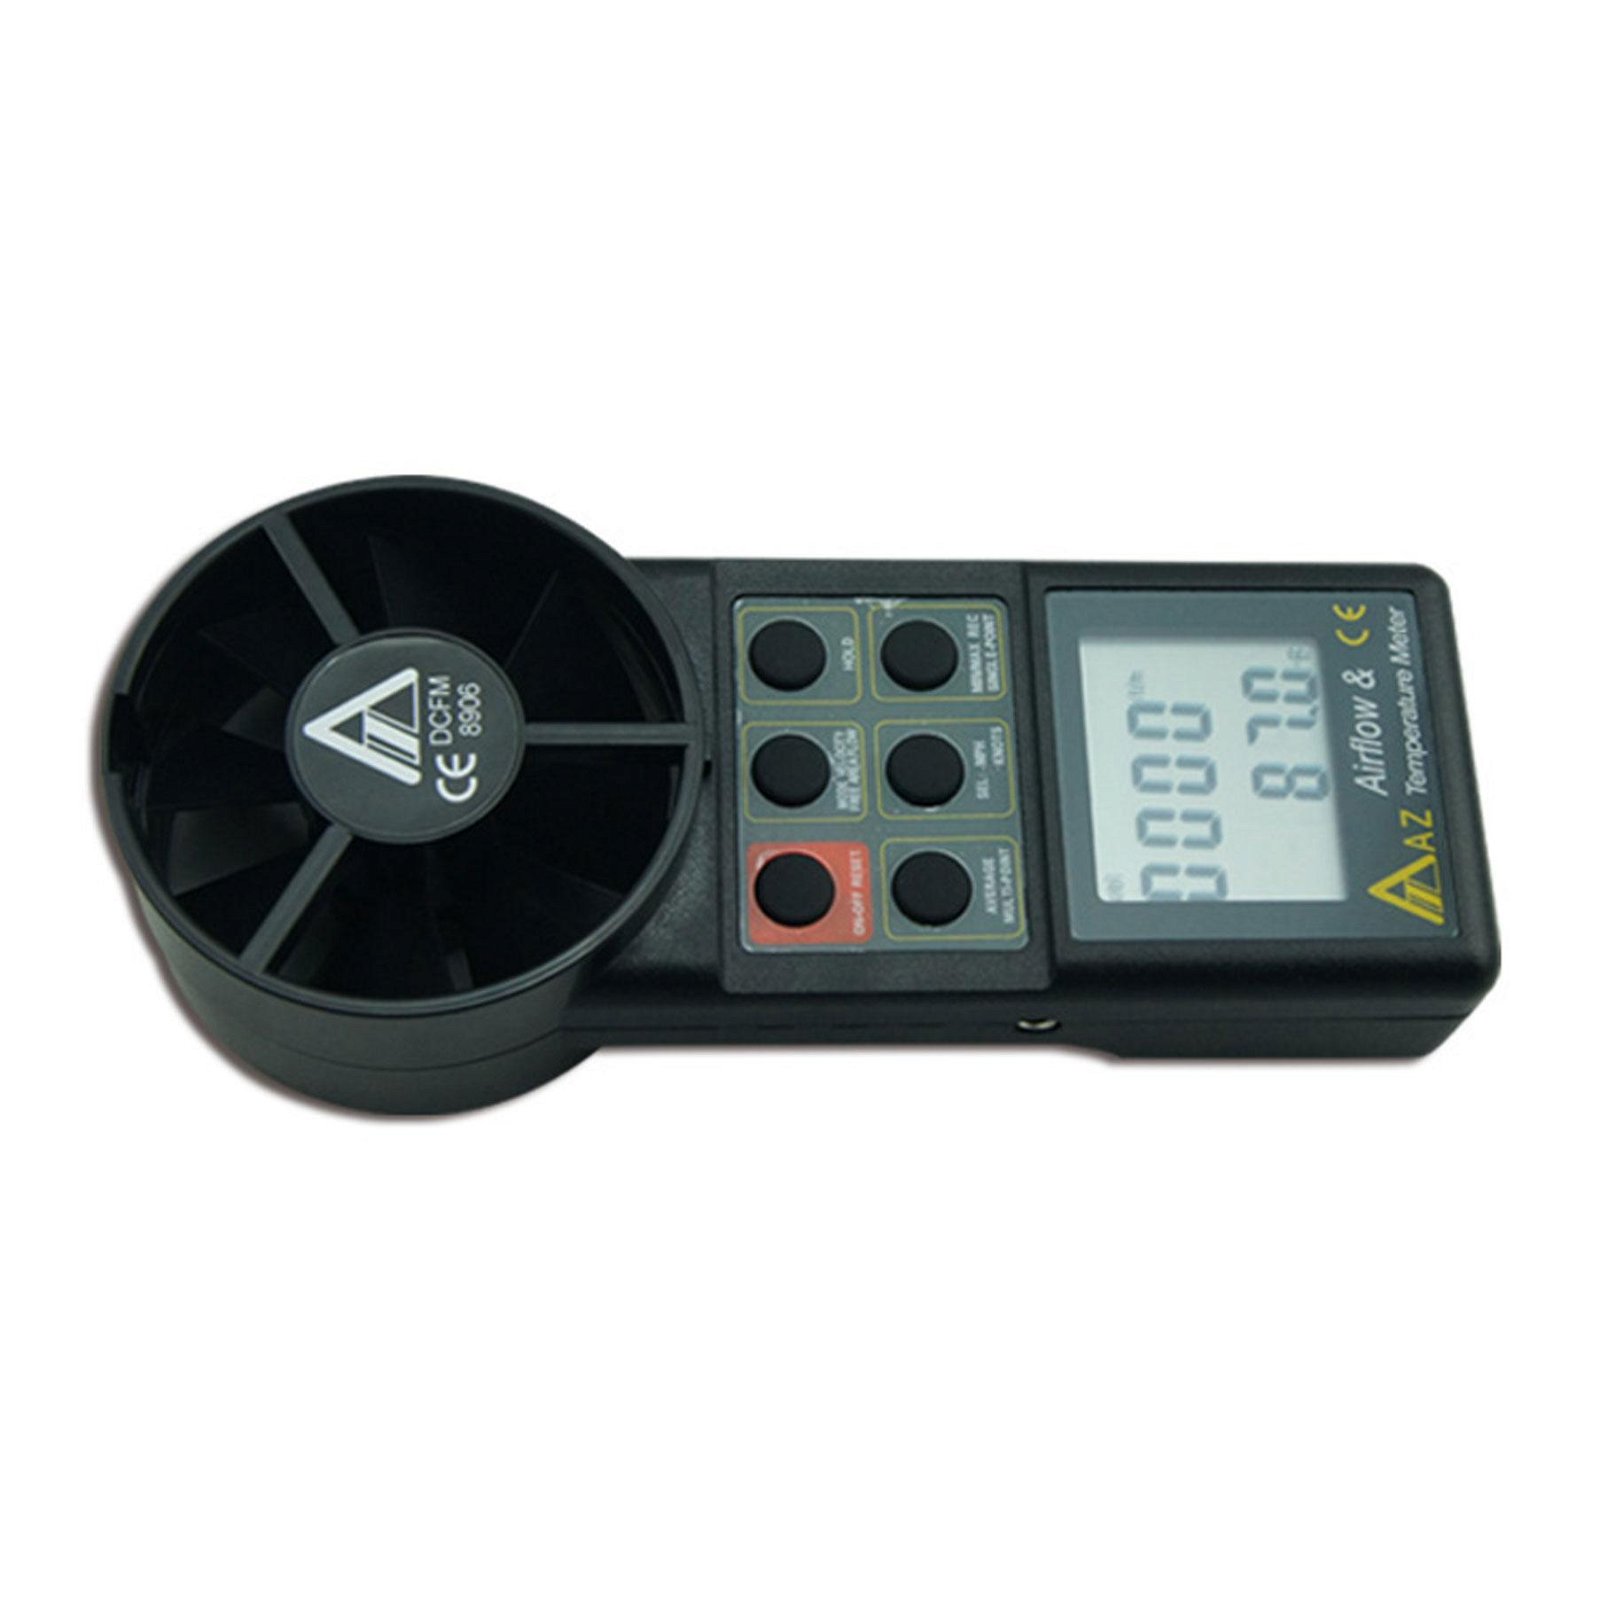 Digital Air Flow Meter AZ8906 Wind Speed Air Volume Meter Temperature Anemometer 4